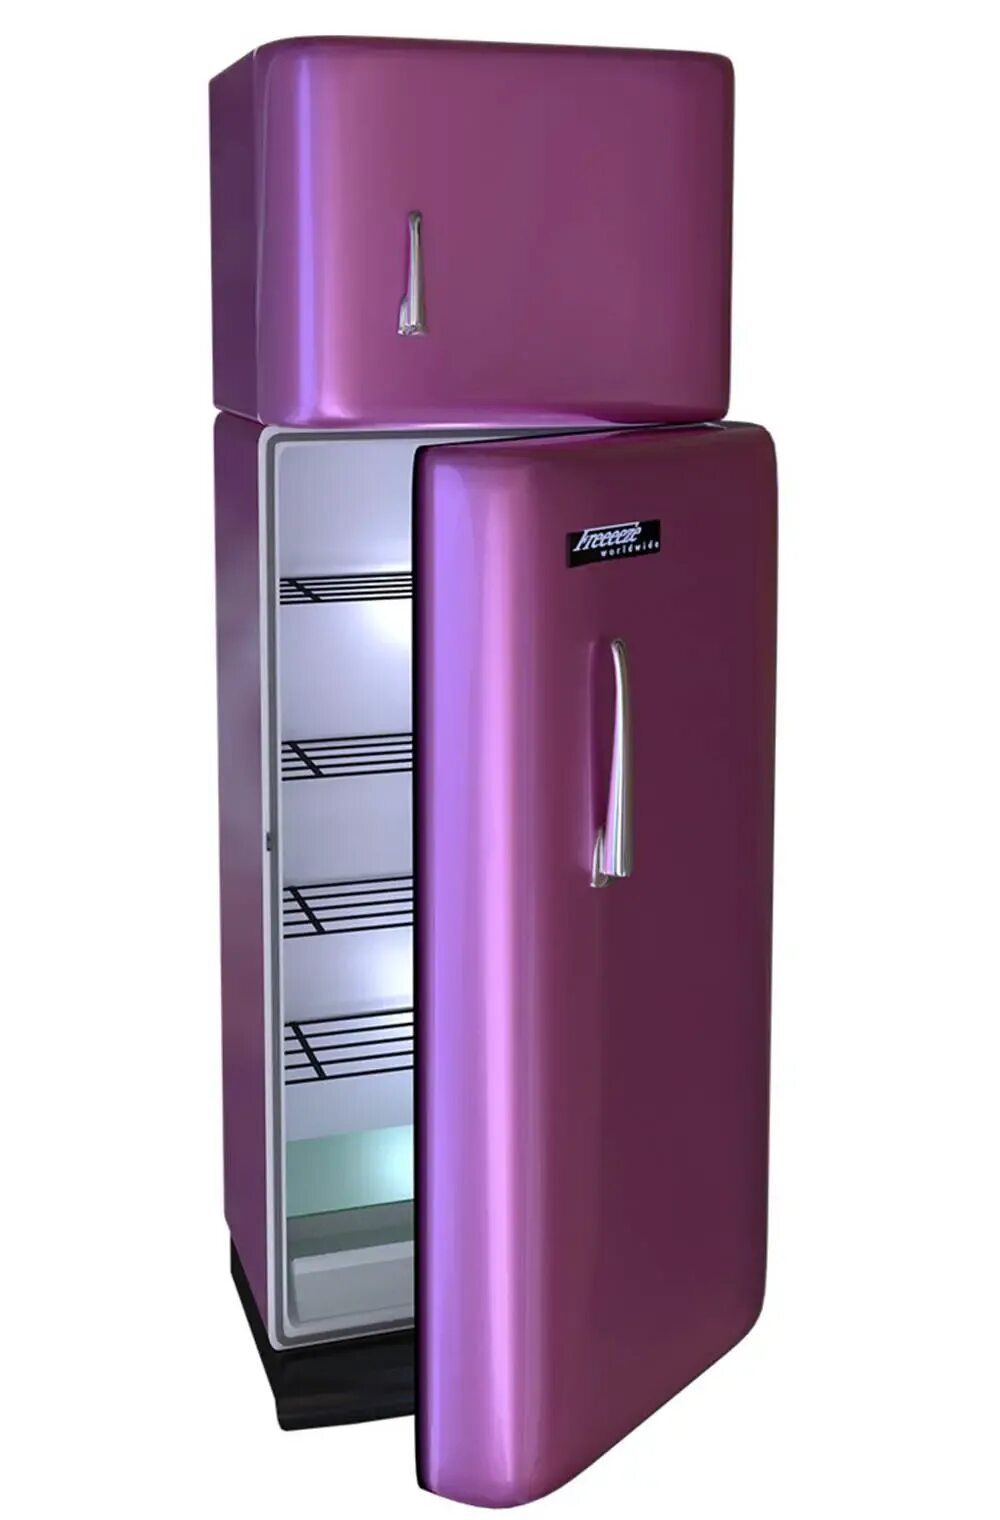 Холодильник спб. Холодильник Freezer Refrigerator. Fridge Freezer холодильник. Фиолетовый холодильник. Цветные холодильники.